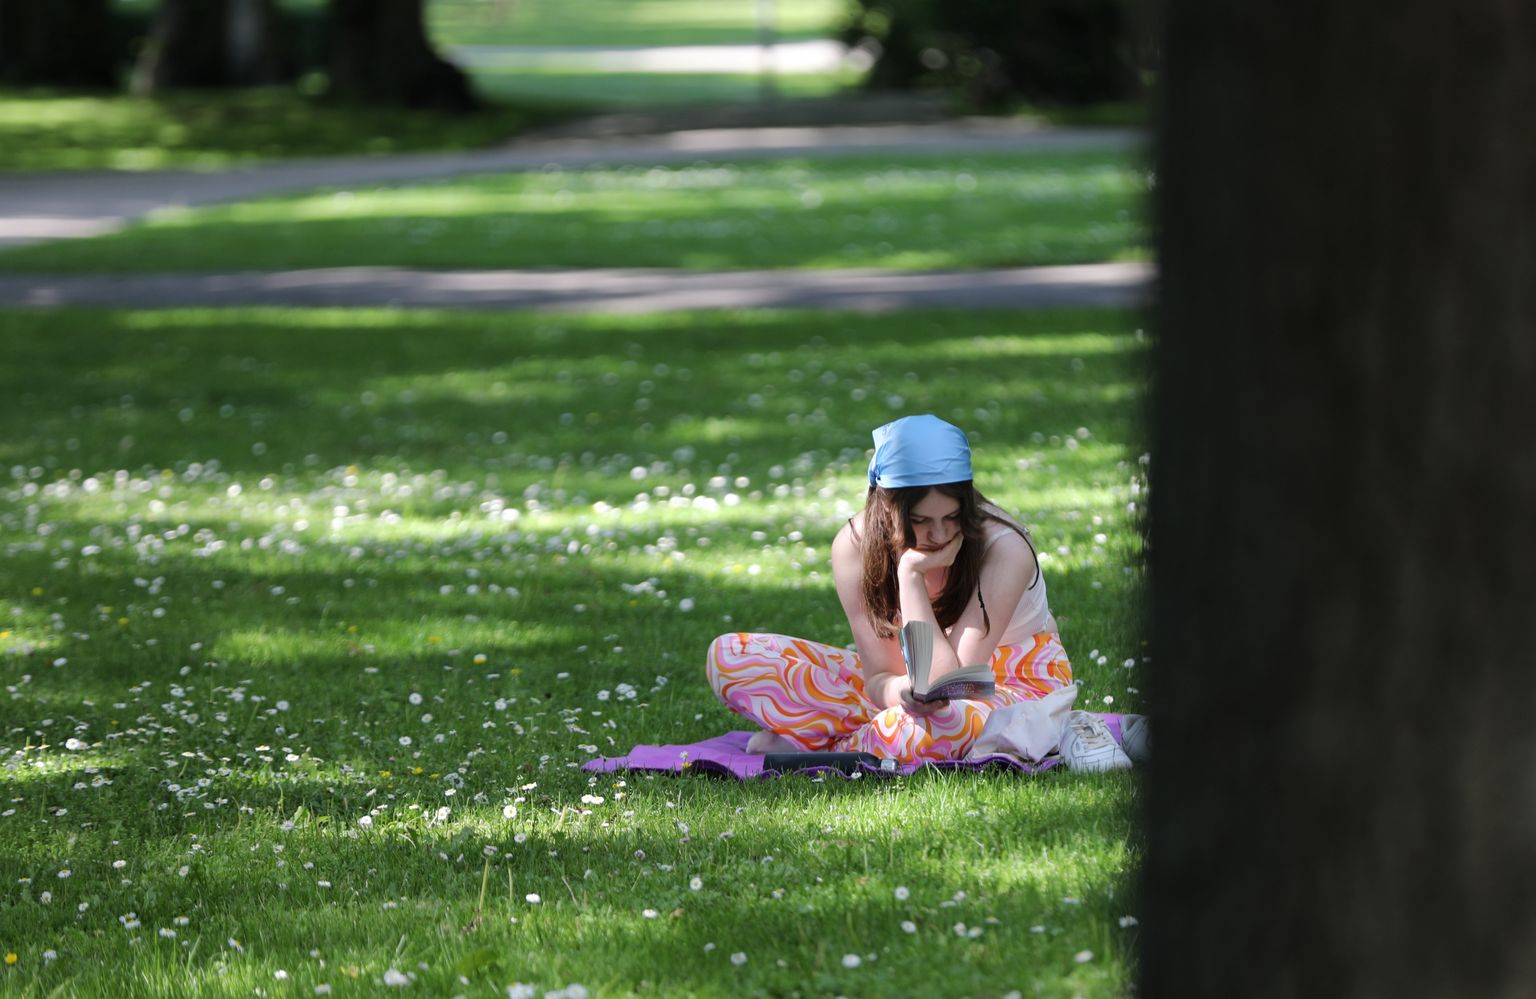 Meitene lasa grāmatu zālienā Kronvalda parkā.